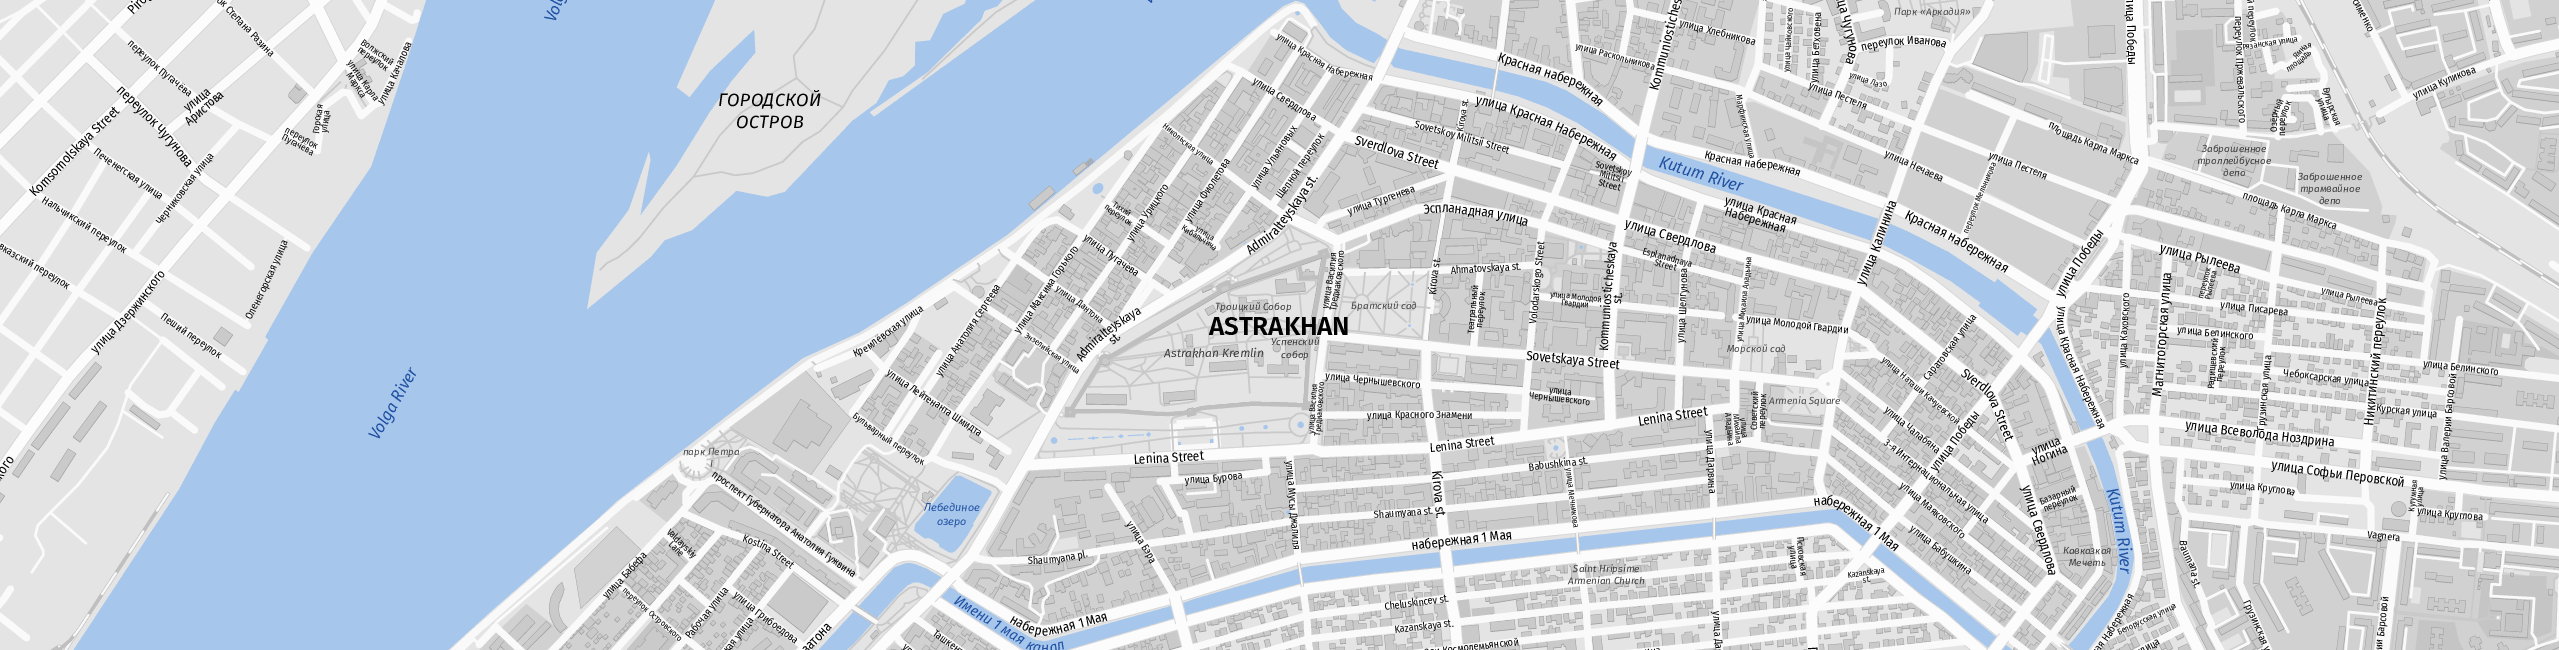 Stadtplan Astrakhan zum Downloaden.